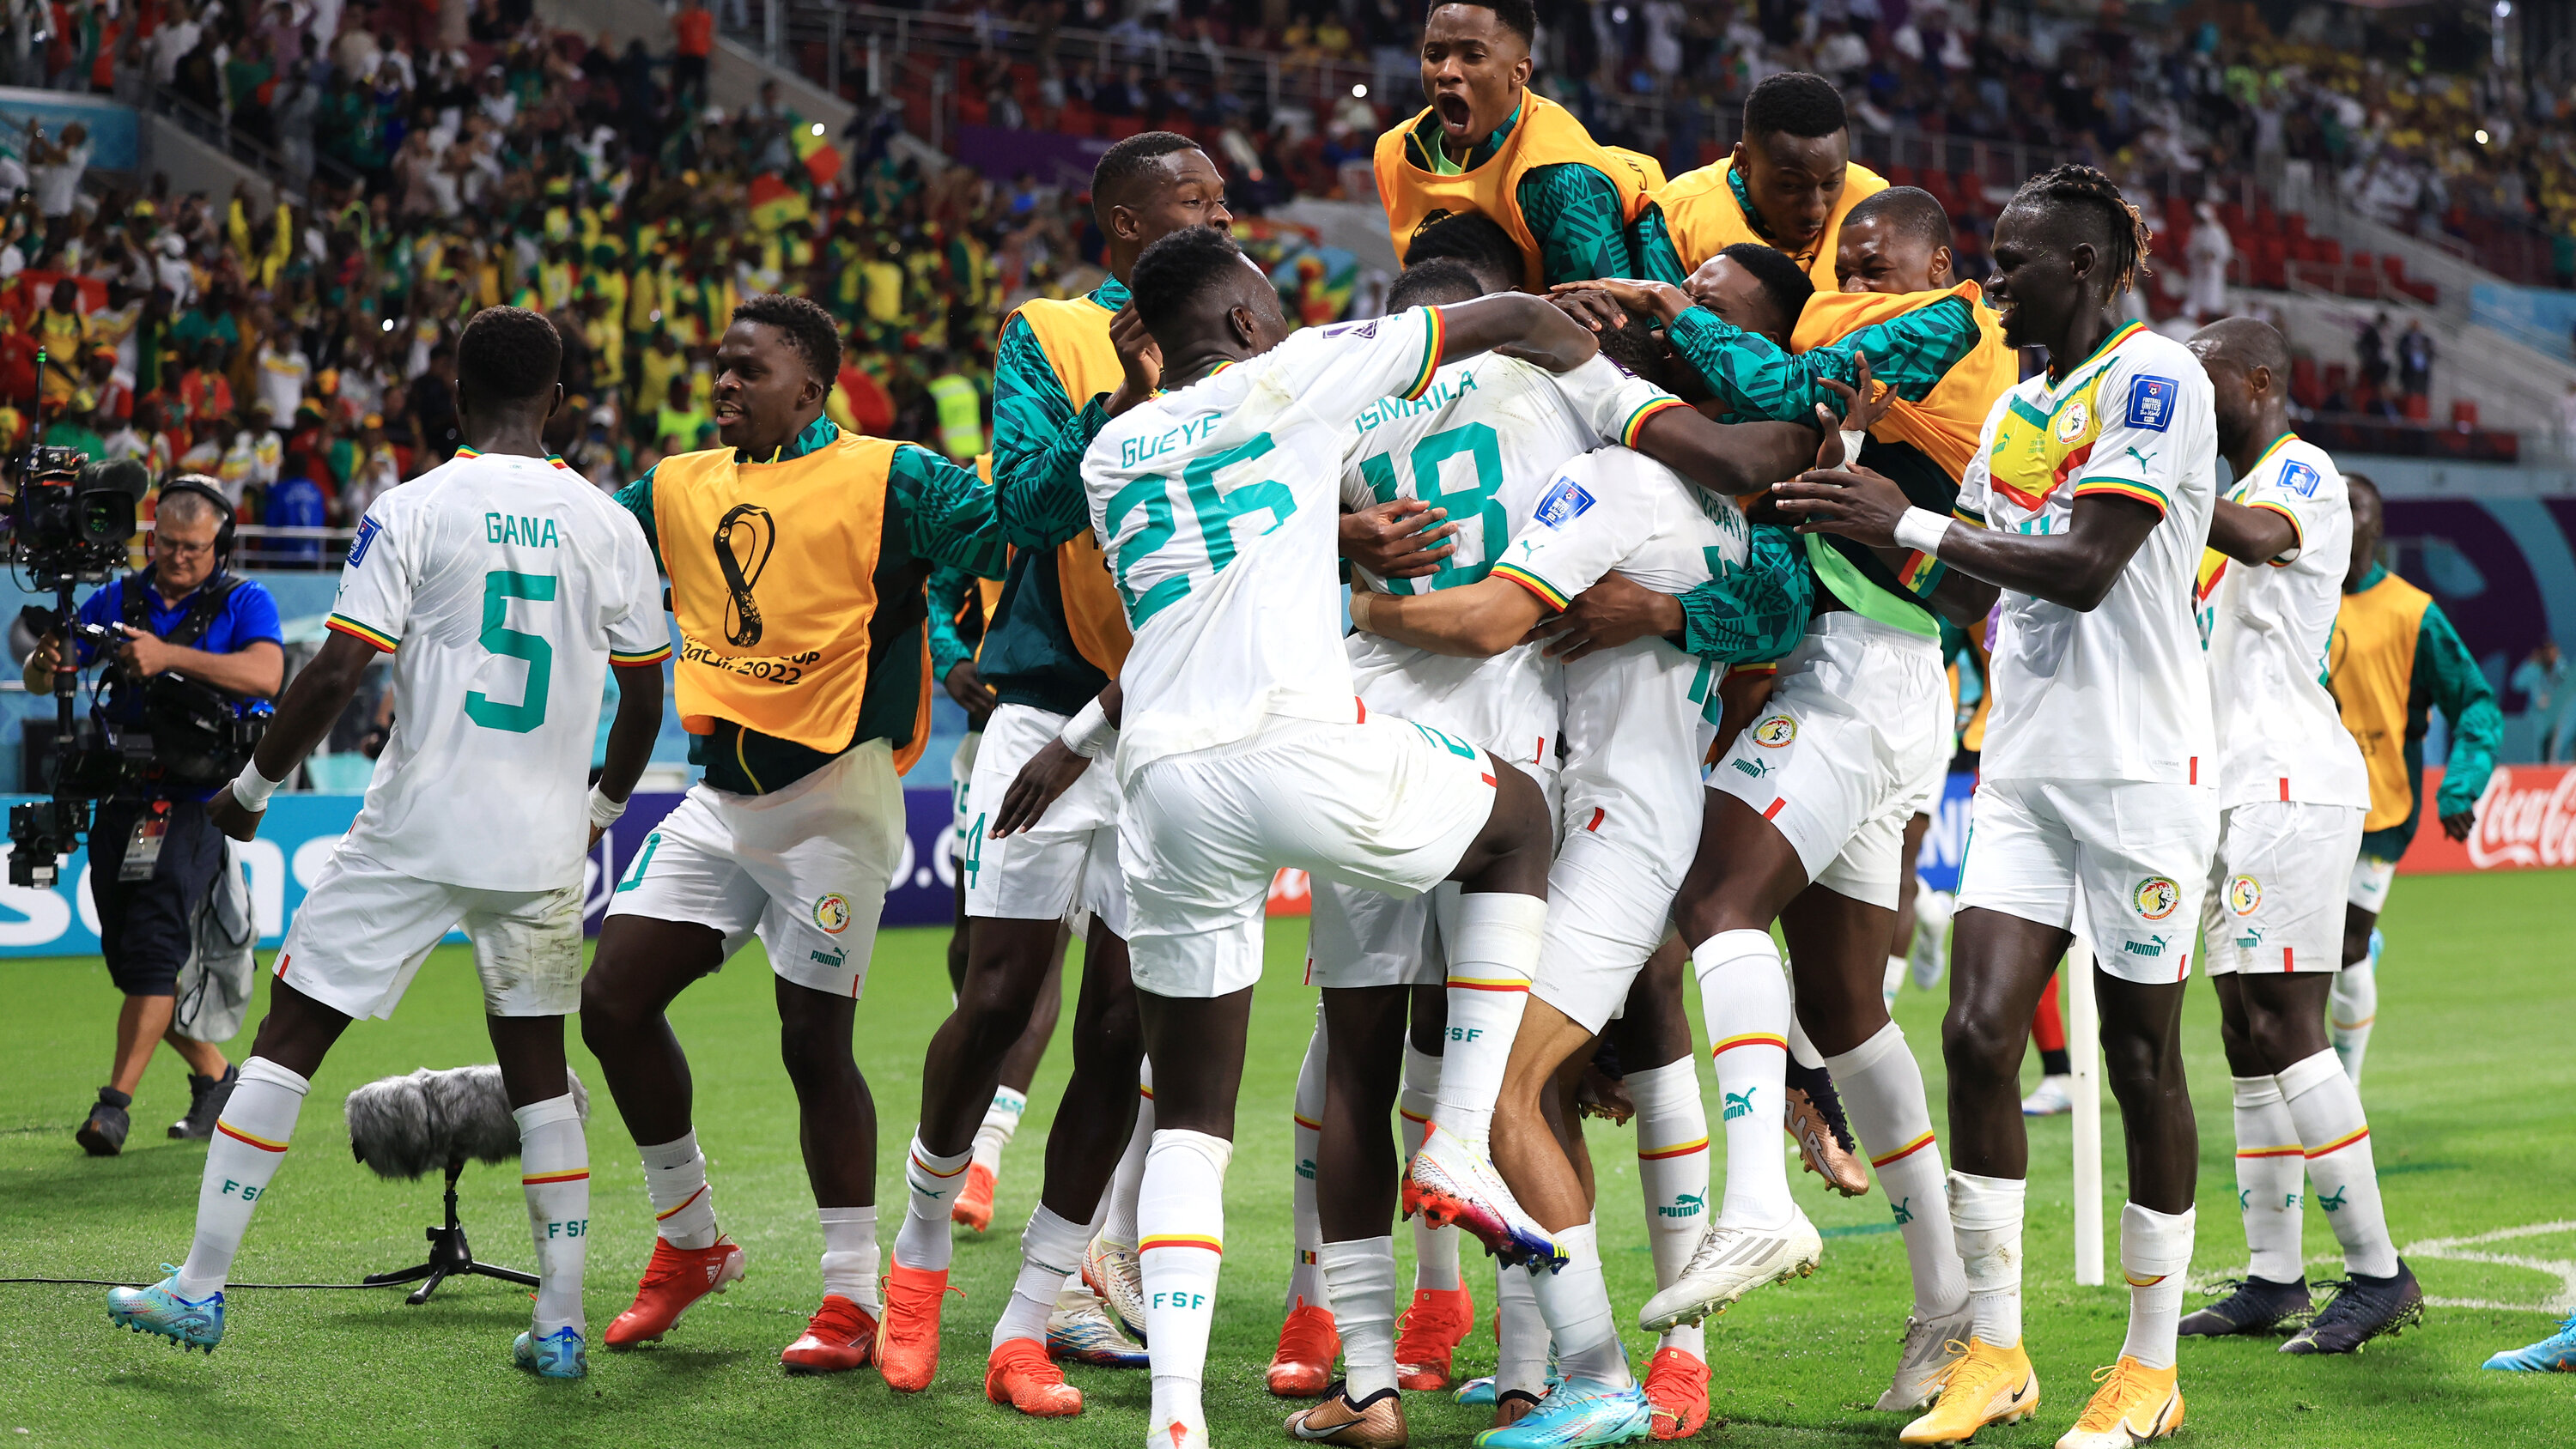 Mondial 2022: le Sénégal qualifié pour les 1/8 en battant l'Equateur 2-1